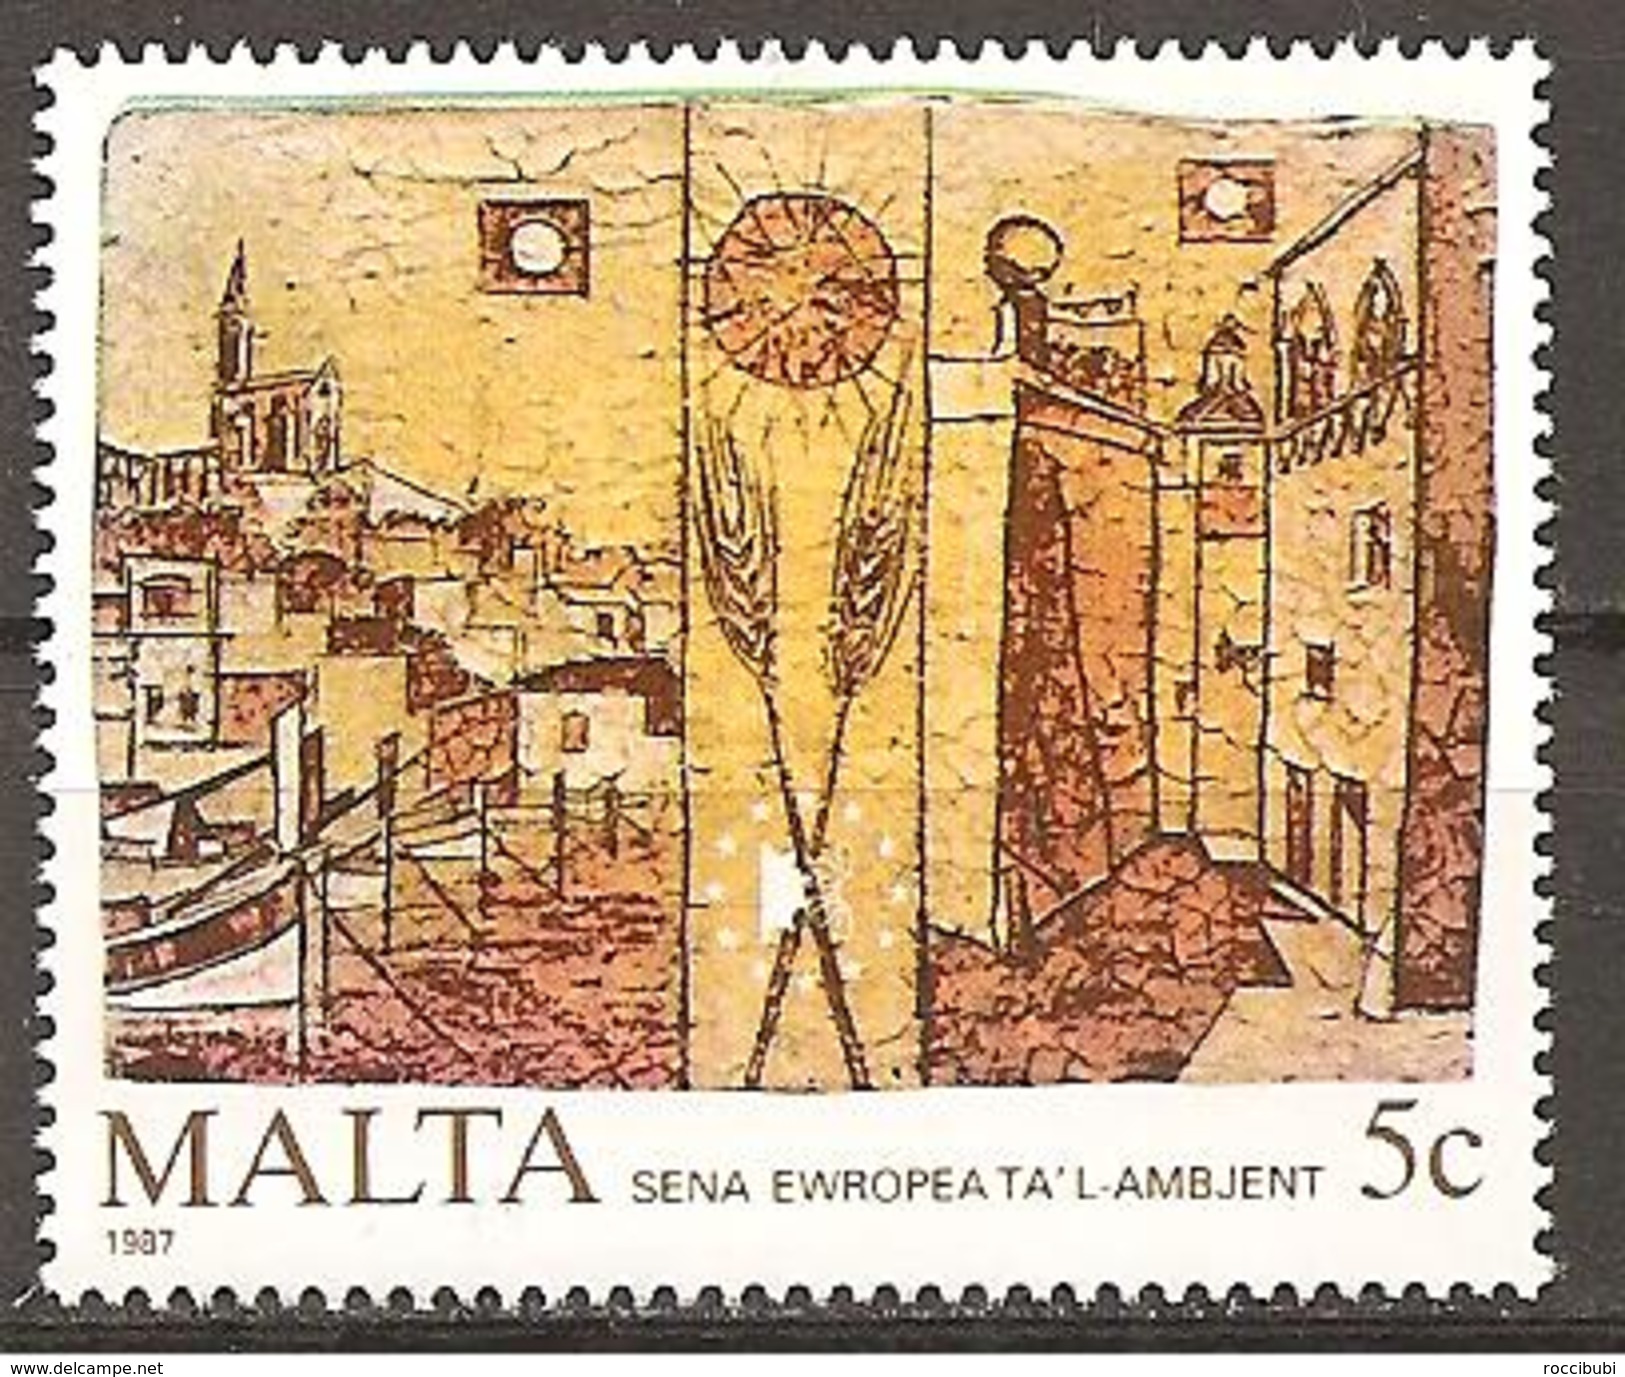 Malta 1987 // Michel 772 ** (M) - Incisioni